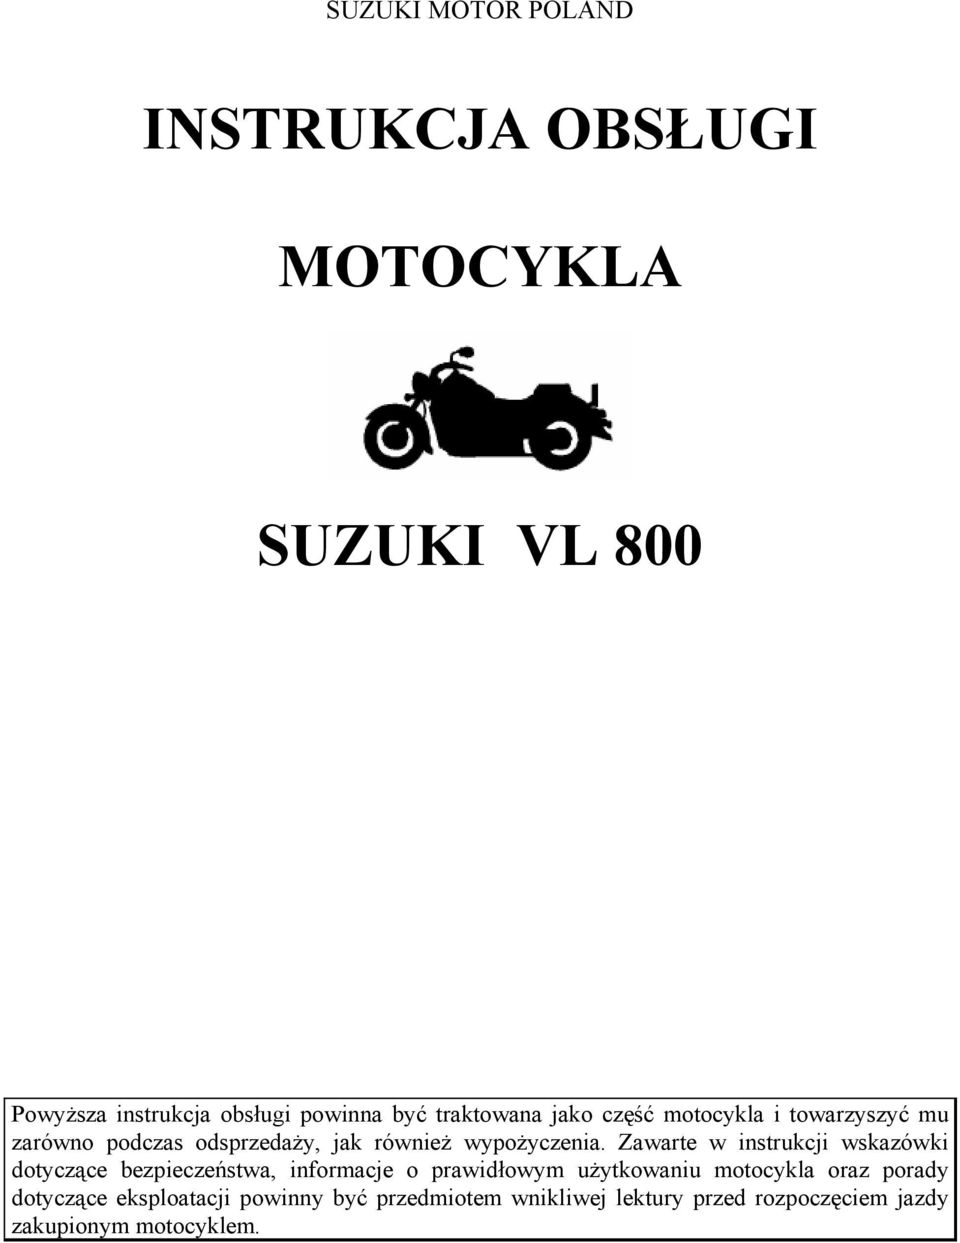 Zawarte w instrukcji wskazówki dotyczące bezpieczeństwa, informacje o prawidłowym użytkowaniu motocykla oraz